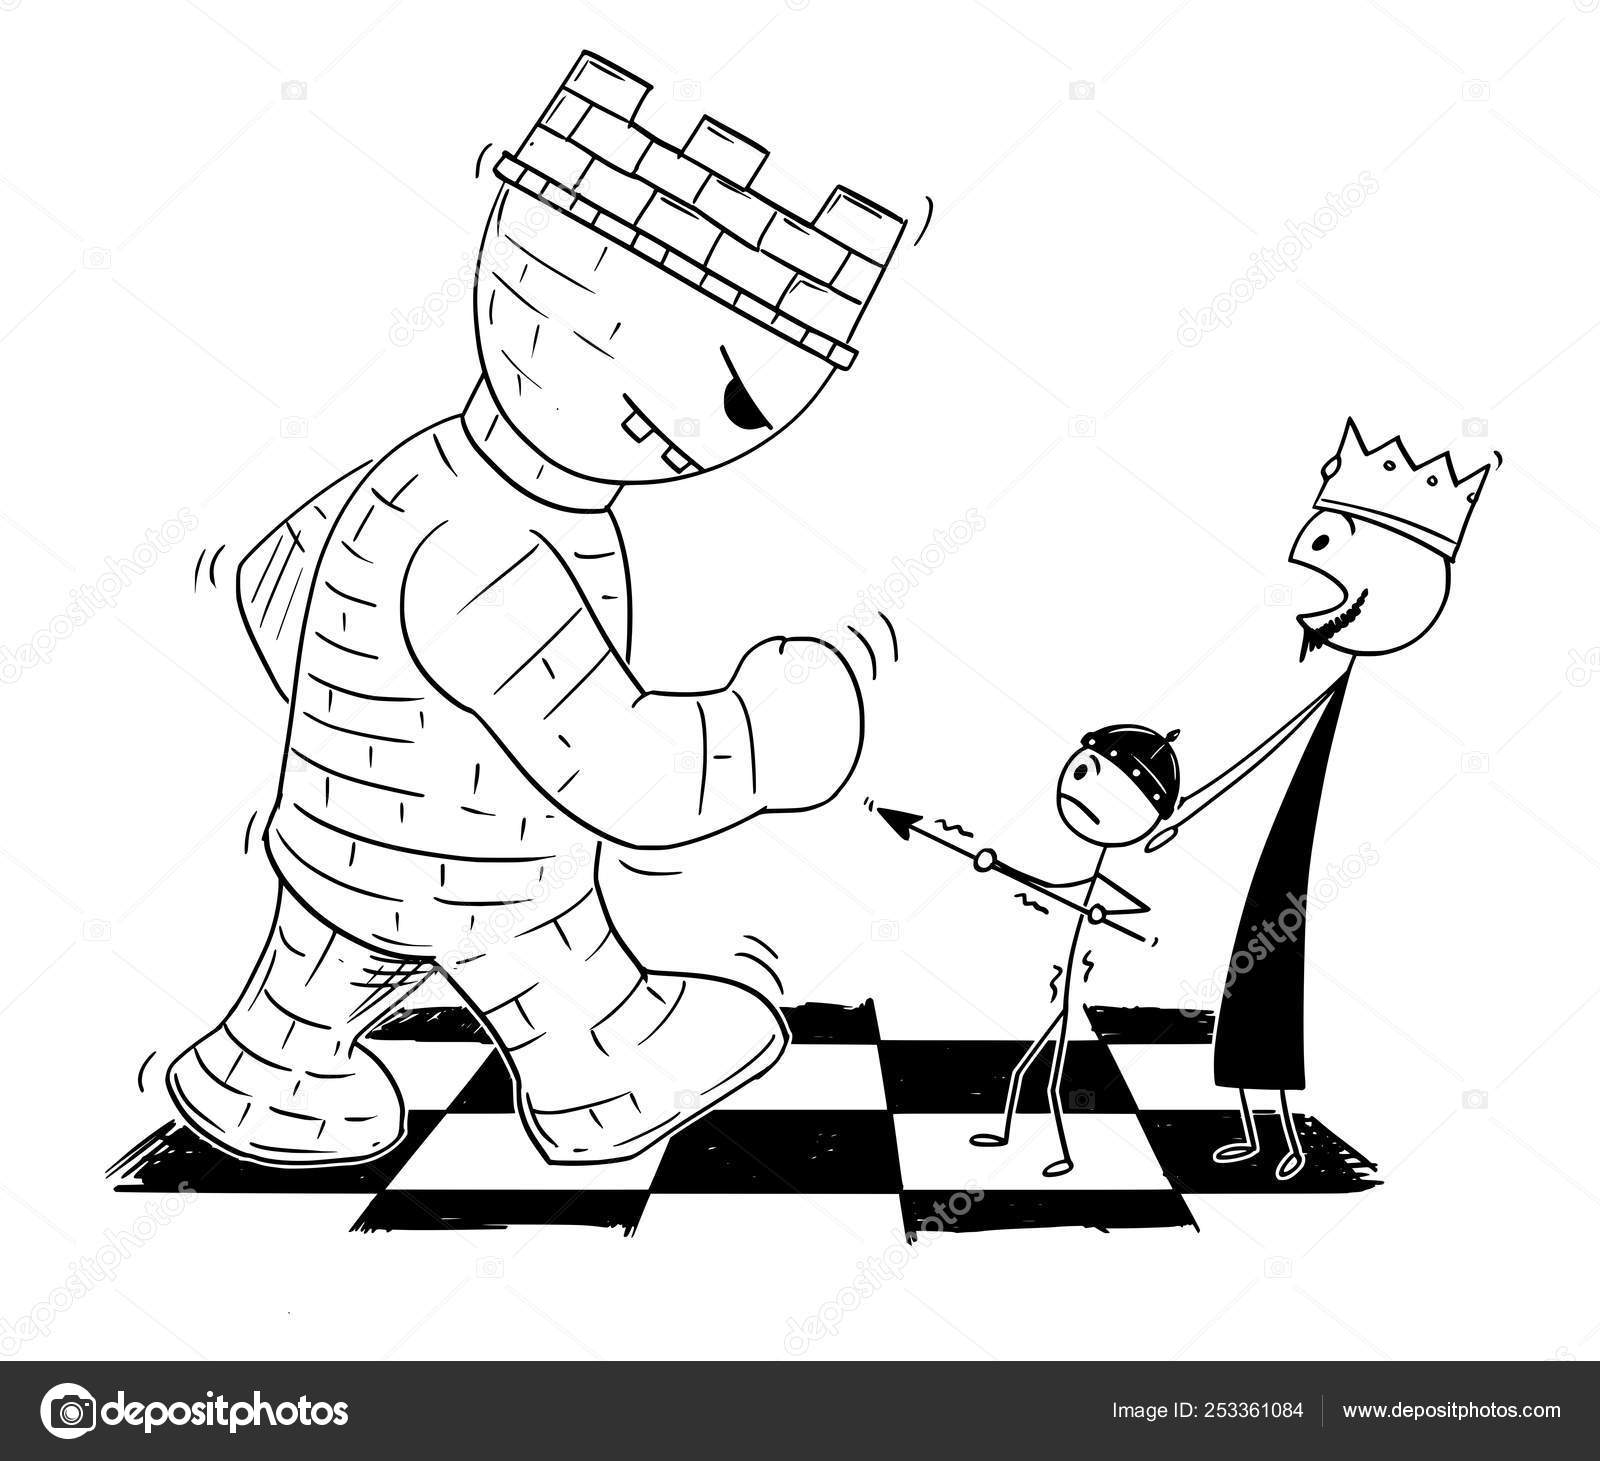 Personagem de desenho animado de menino adolescente fazendo movimento  estratégico com peça de xadrez de bispo gigante